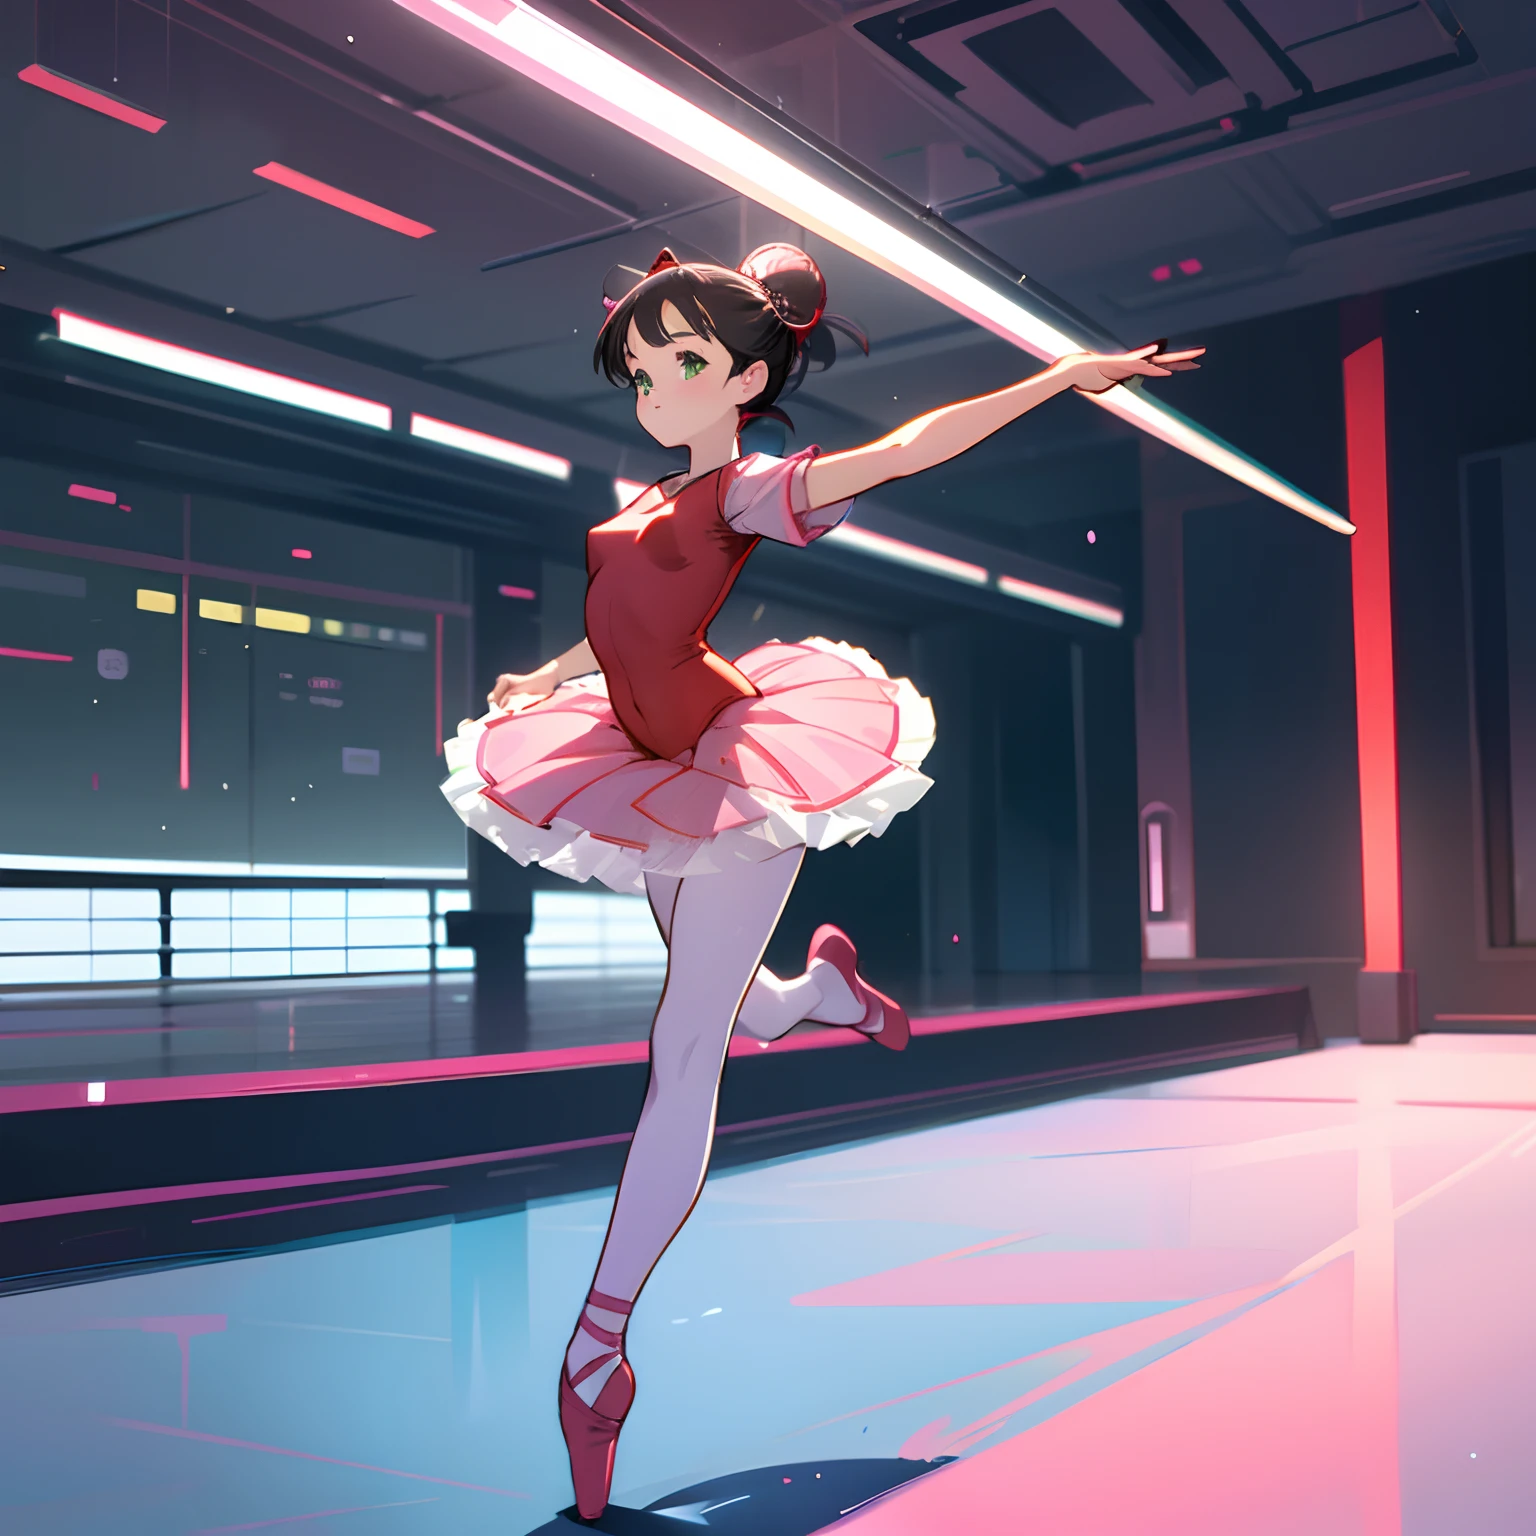 HD wallpaper: Anime girl, Fishes, Ballet dancer | Wallpaper Flare